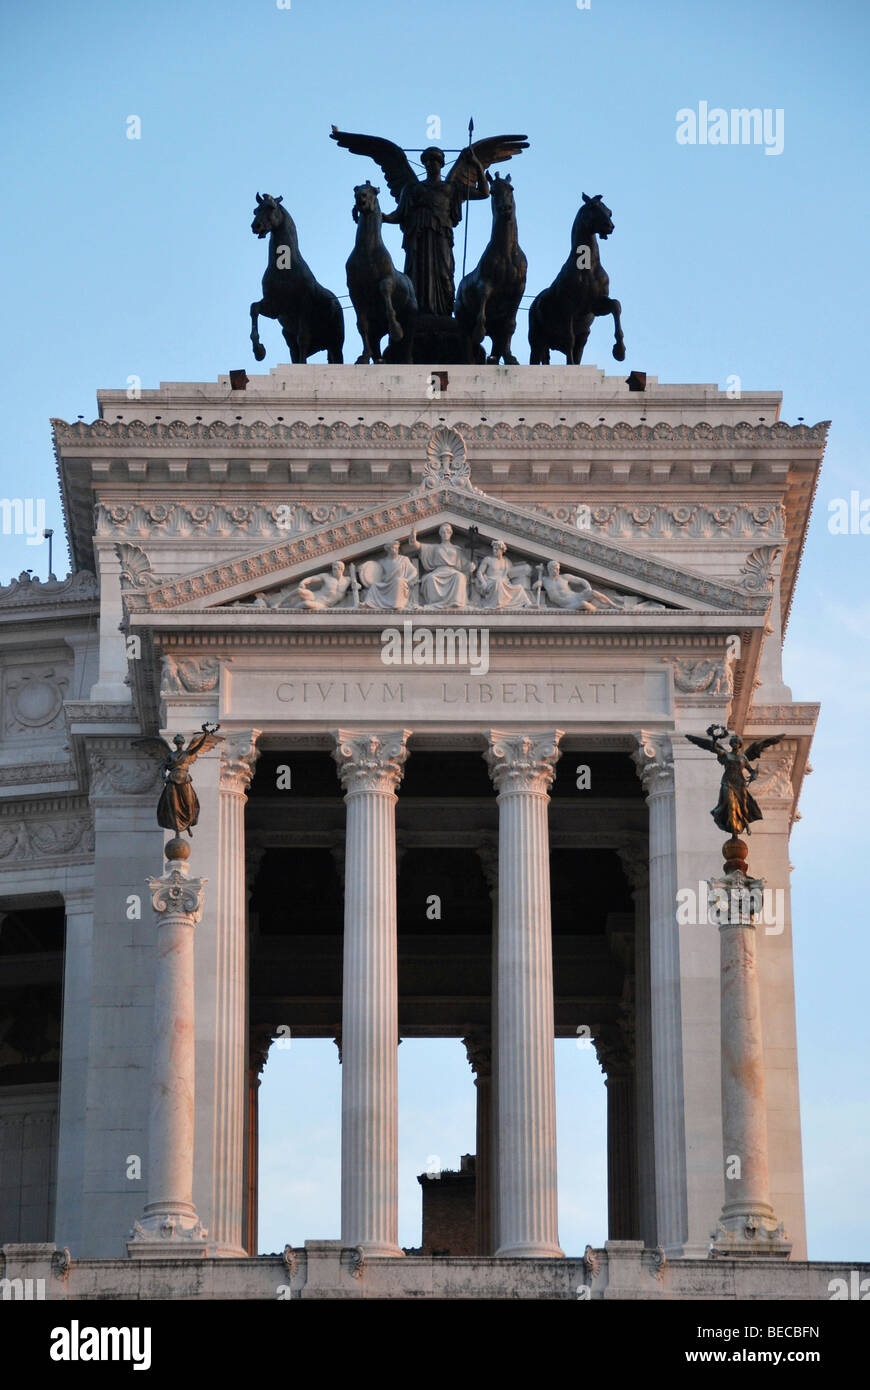 Monumento Nazionale a Vittorio Emanuele II, Piazza Venezia Square, historic centre, Rome, Italy Stock Photo